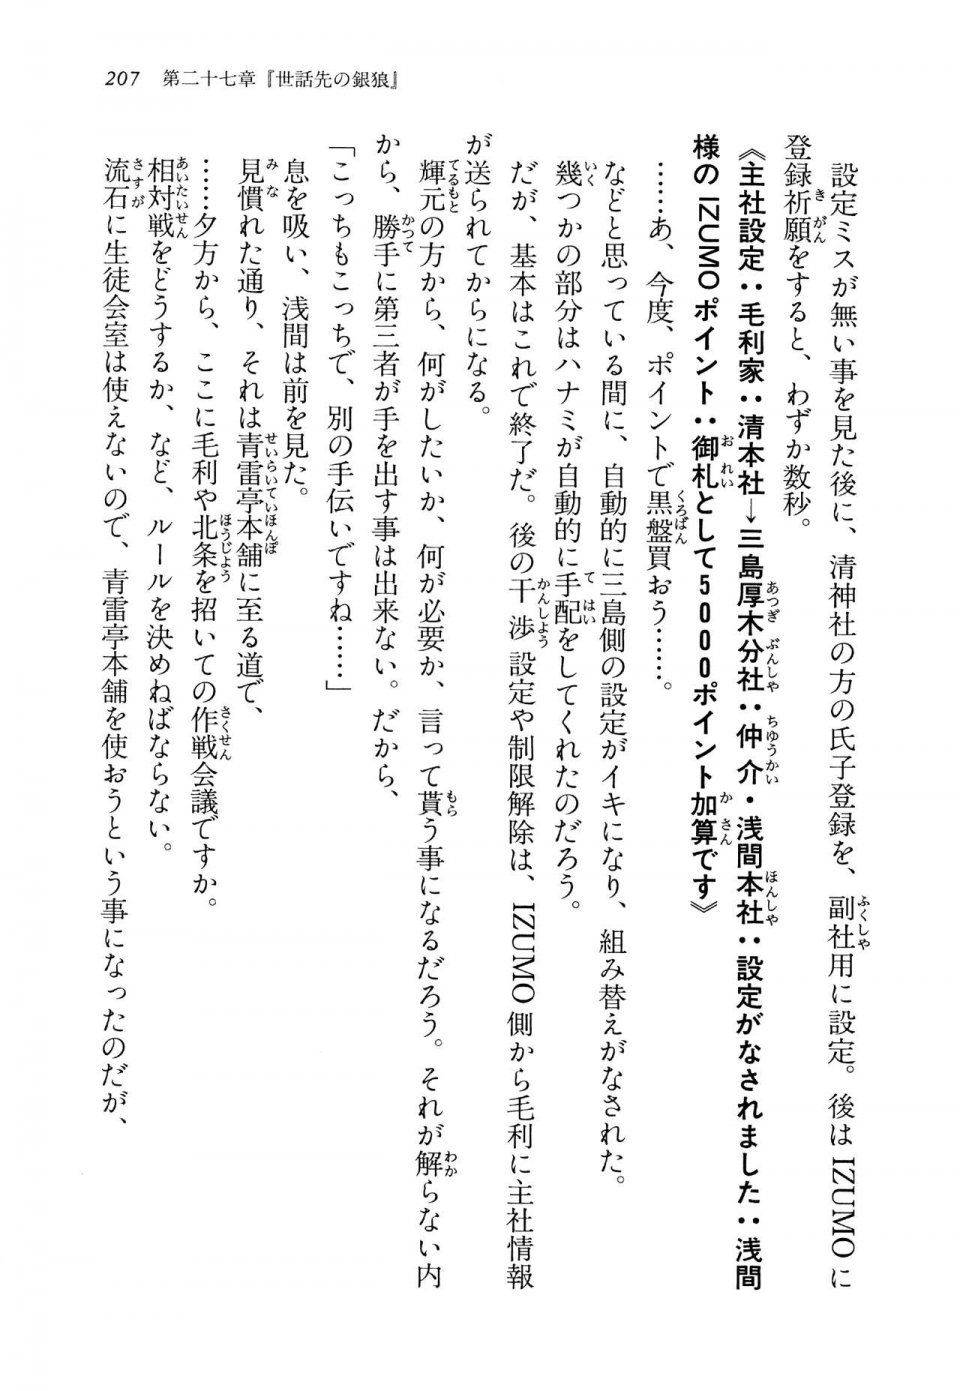 Kyoukai Senjou no Horizon LN Vol 14(6B) - Photo #207